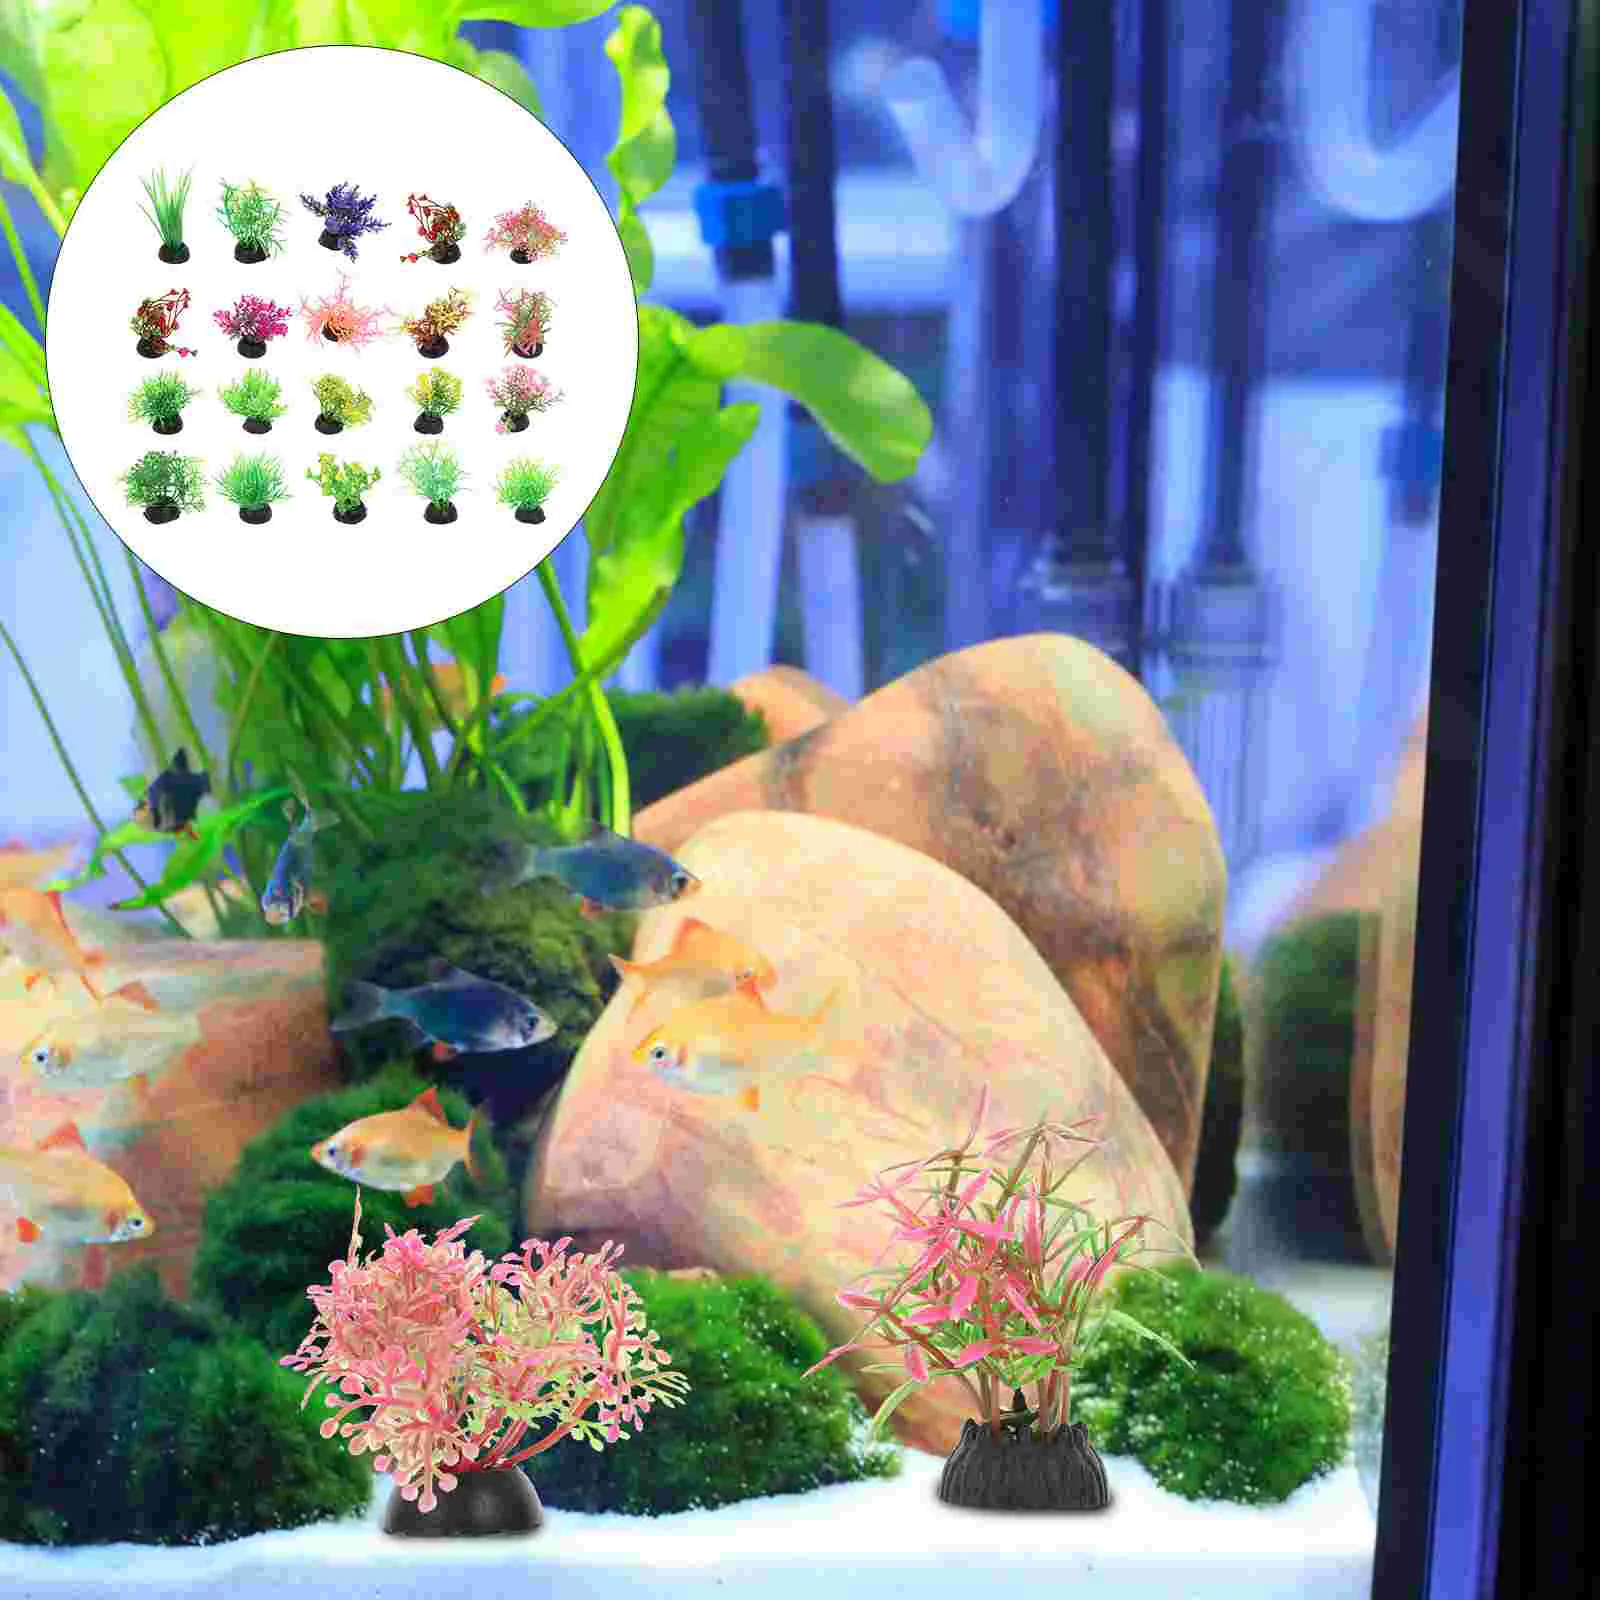 

20 Pcs Fish Tank Landscaping Water Plants Adornment Betta Decor Aquarium Accessories Plastic Glass Aquatic Model